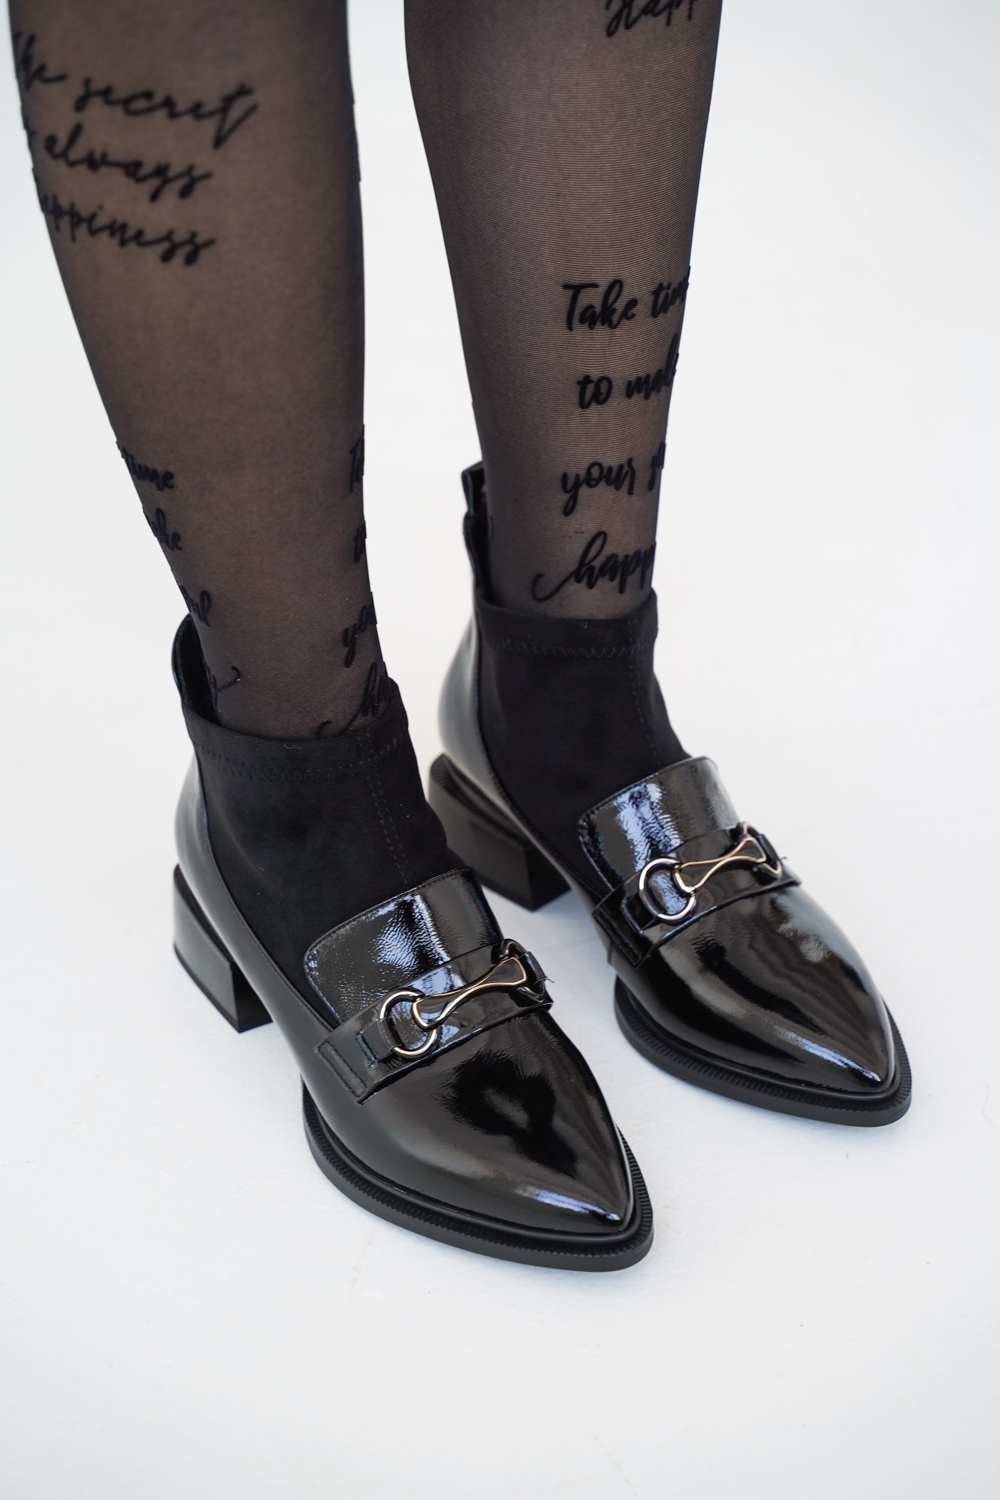 Ботинки женские, арт 71227-F3-H003-H1316, натуральная кожа, цвет черн.